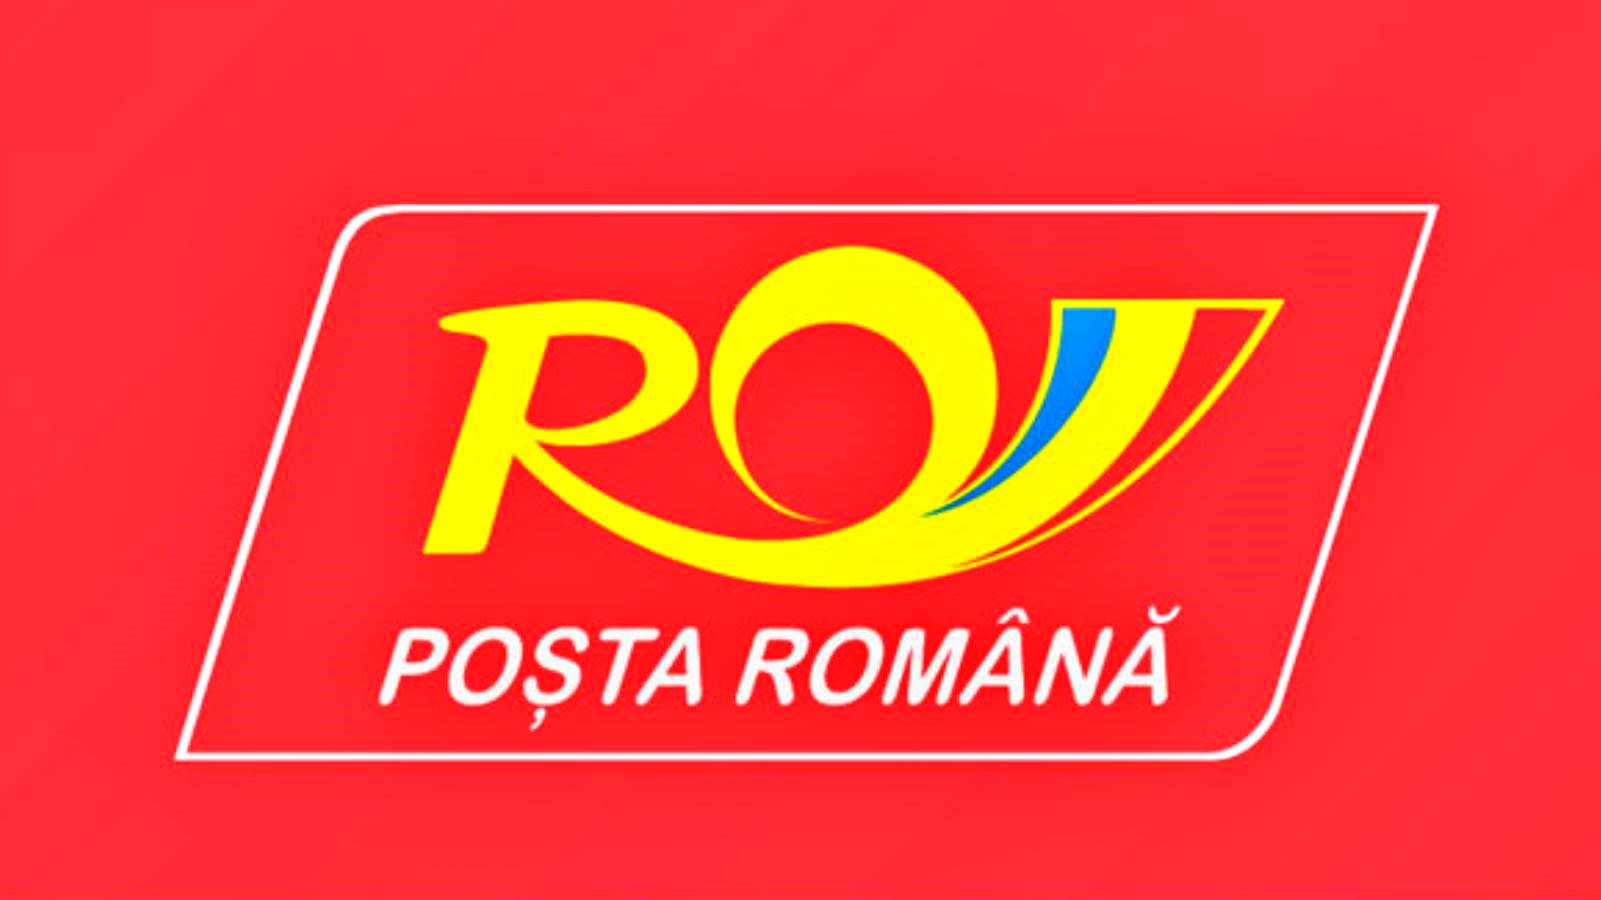 Roemeense post uitgebreide sms-service, waarom u meldingen ontvangt